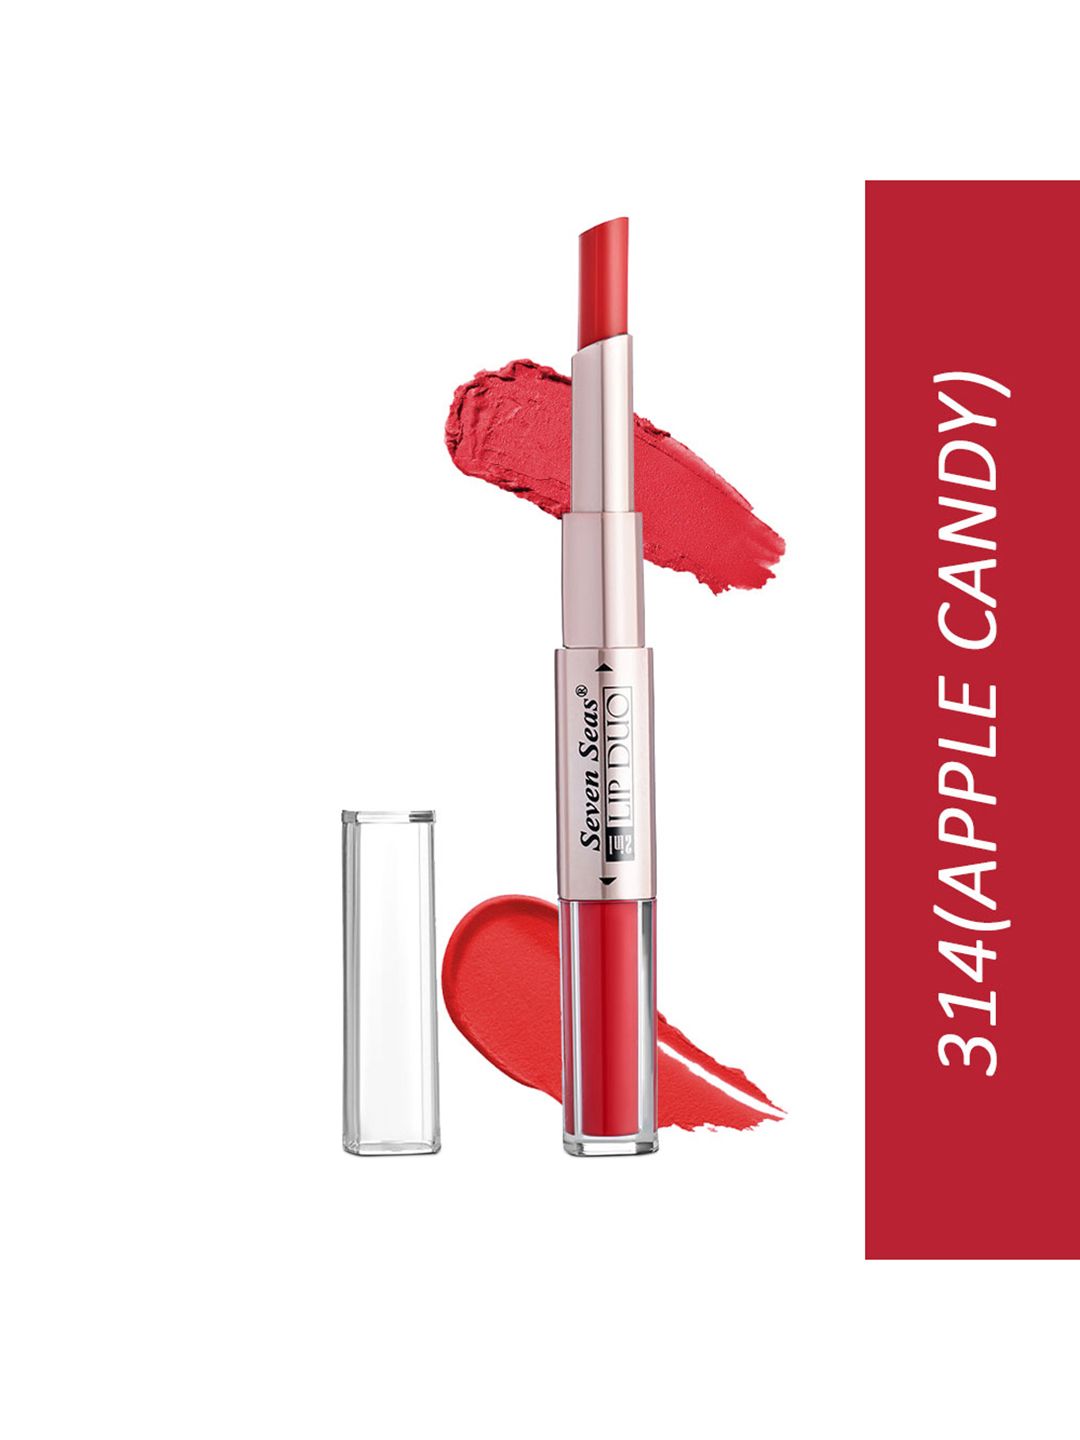 Seven Seas Red Lip Duo 2 In 1 Liquid Lipstick With Stick Lipstick Price in India